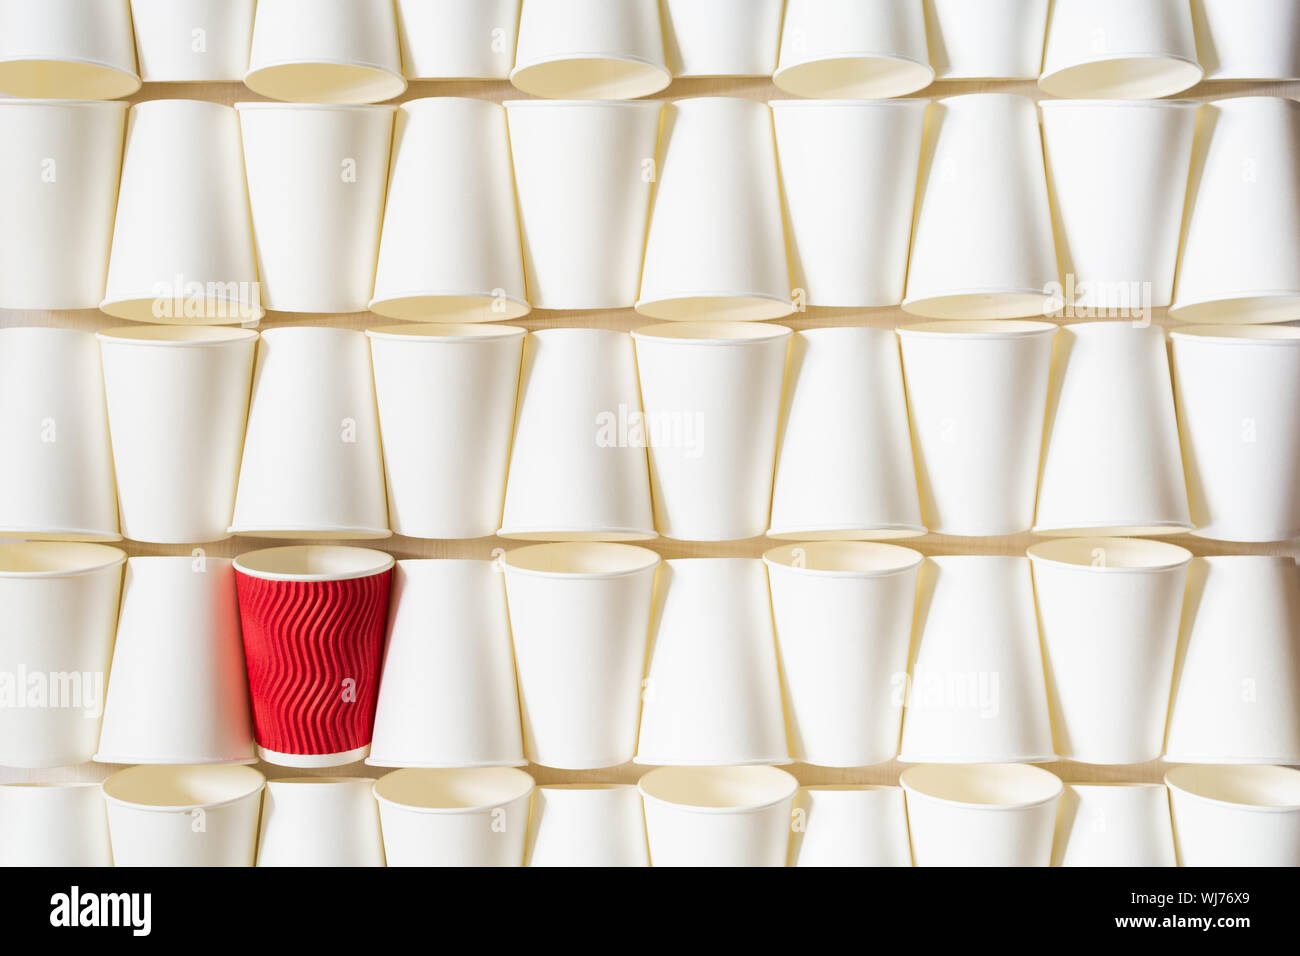 La configurazione di sfondo bianco di caffè bicchieri di carta con red cup in piedi fuori in un angolo. Concettuale con spazio di copia Foto Stock